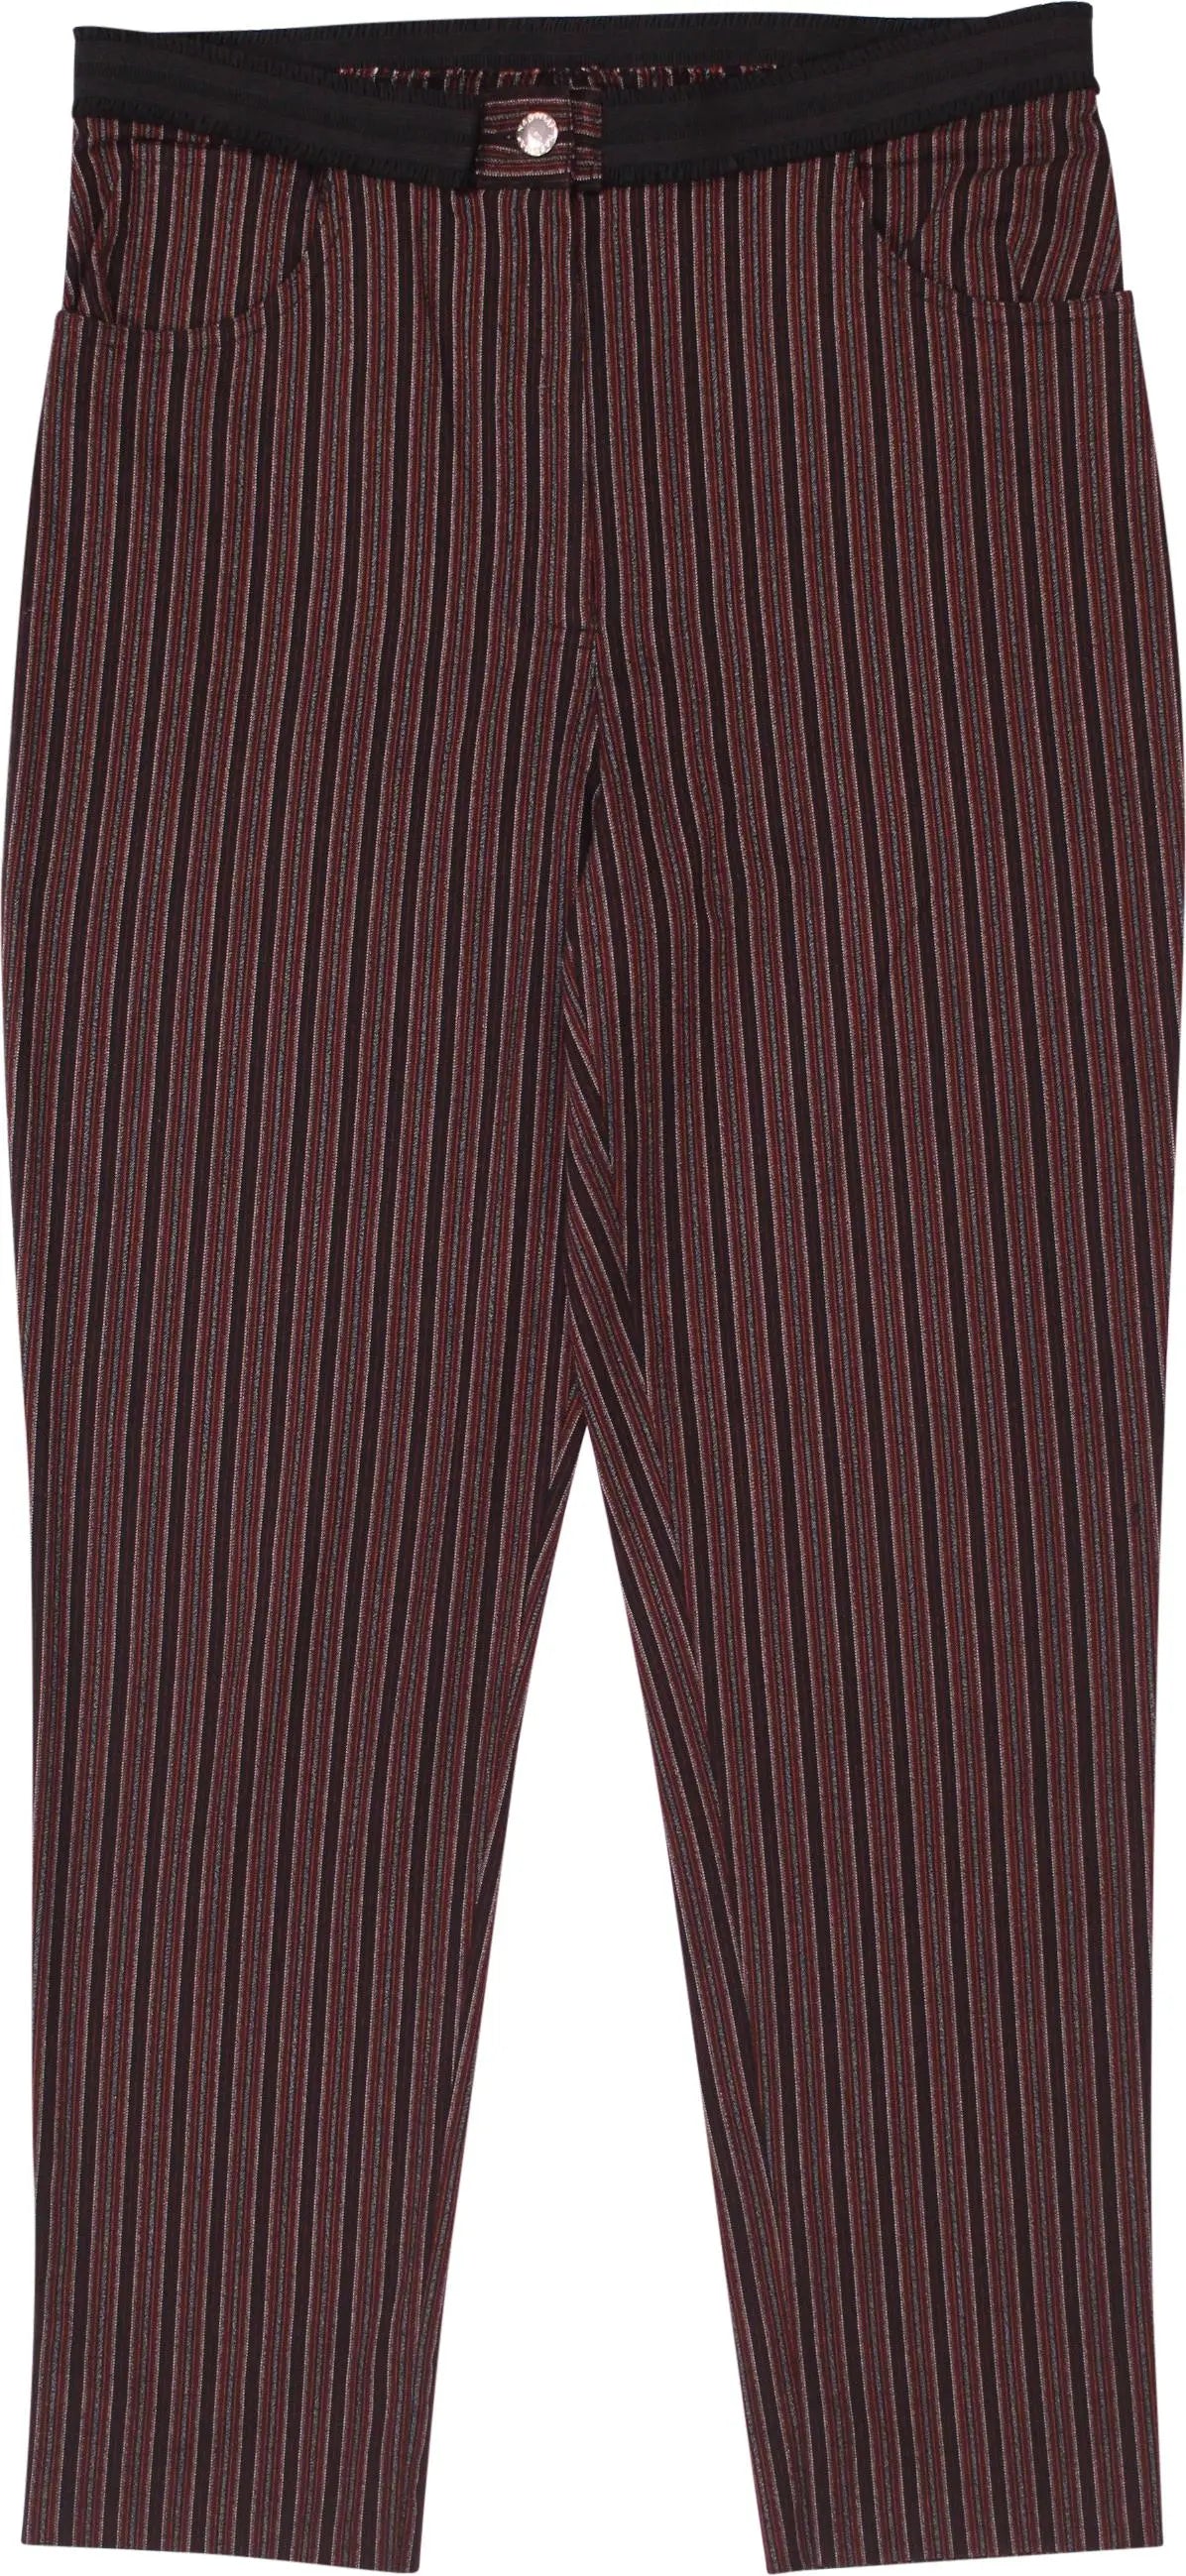 Naf Naf - Striped Pants by Naf Naf- ThriftTale.com - Vintage and second handclothing